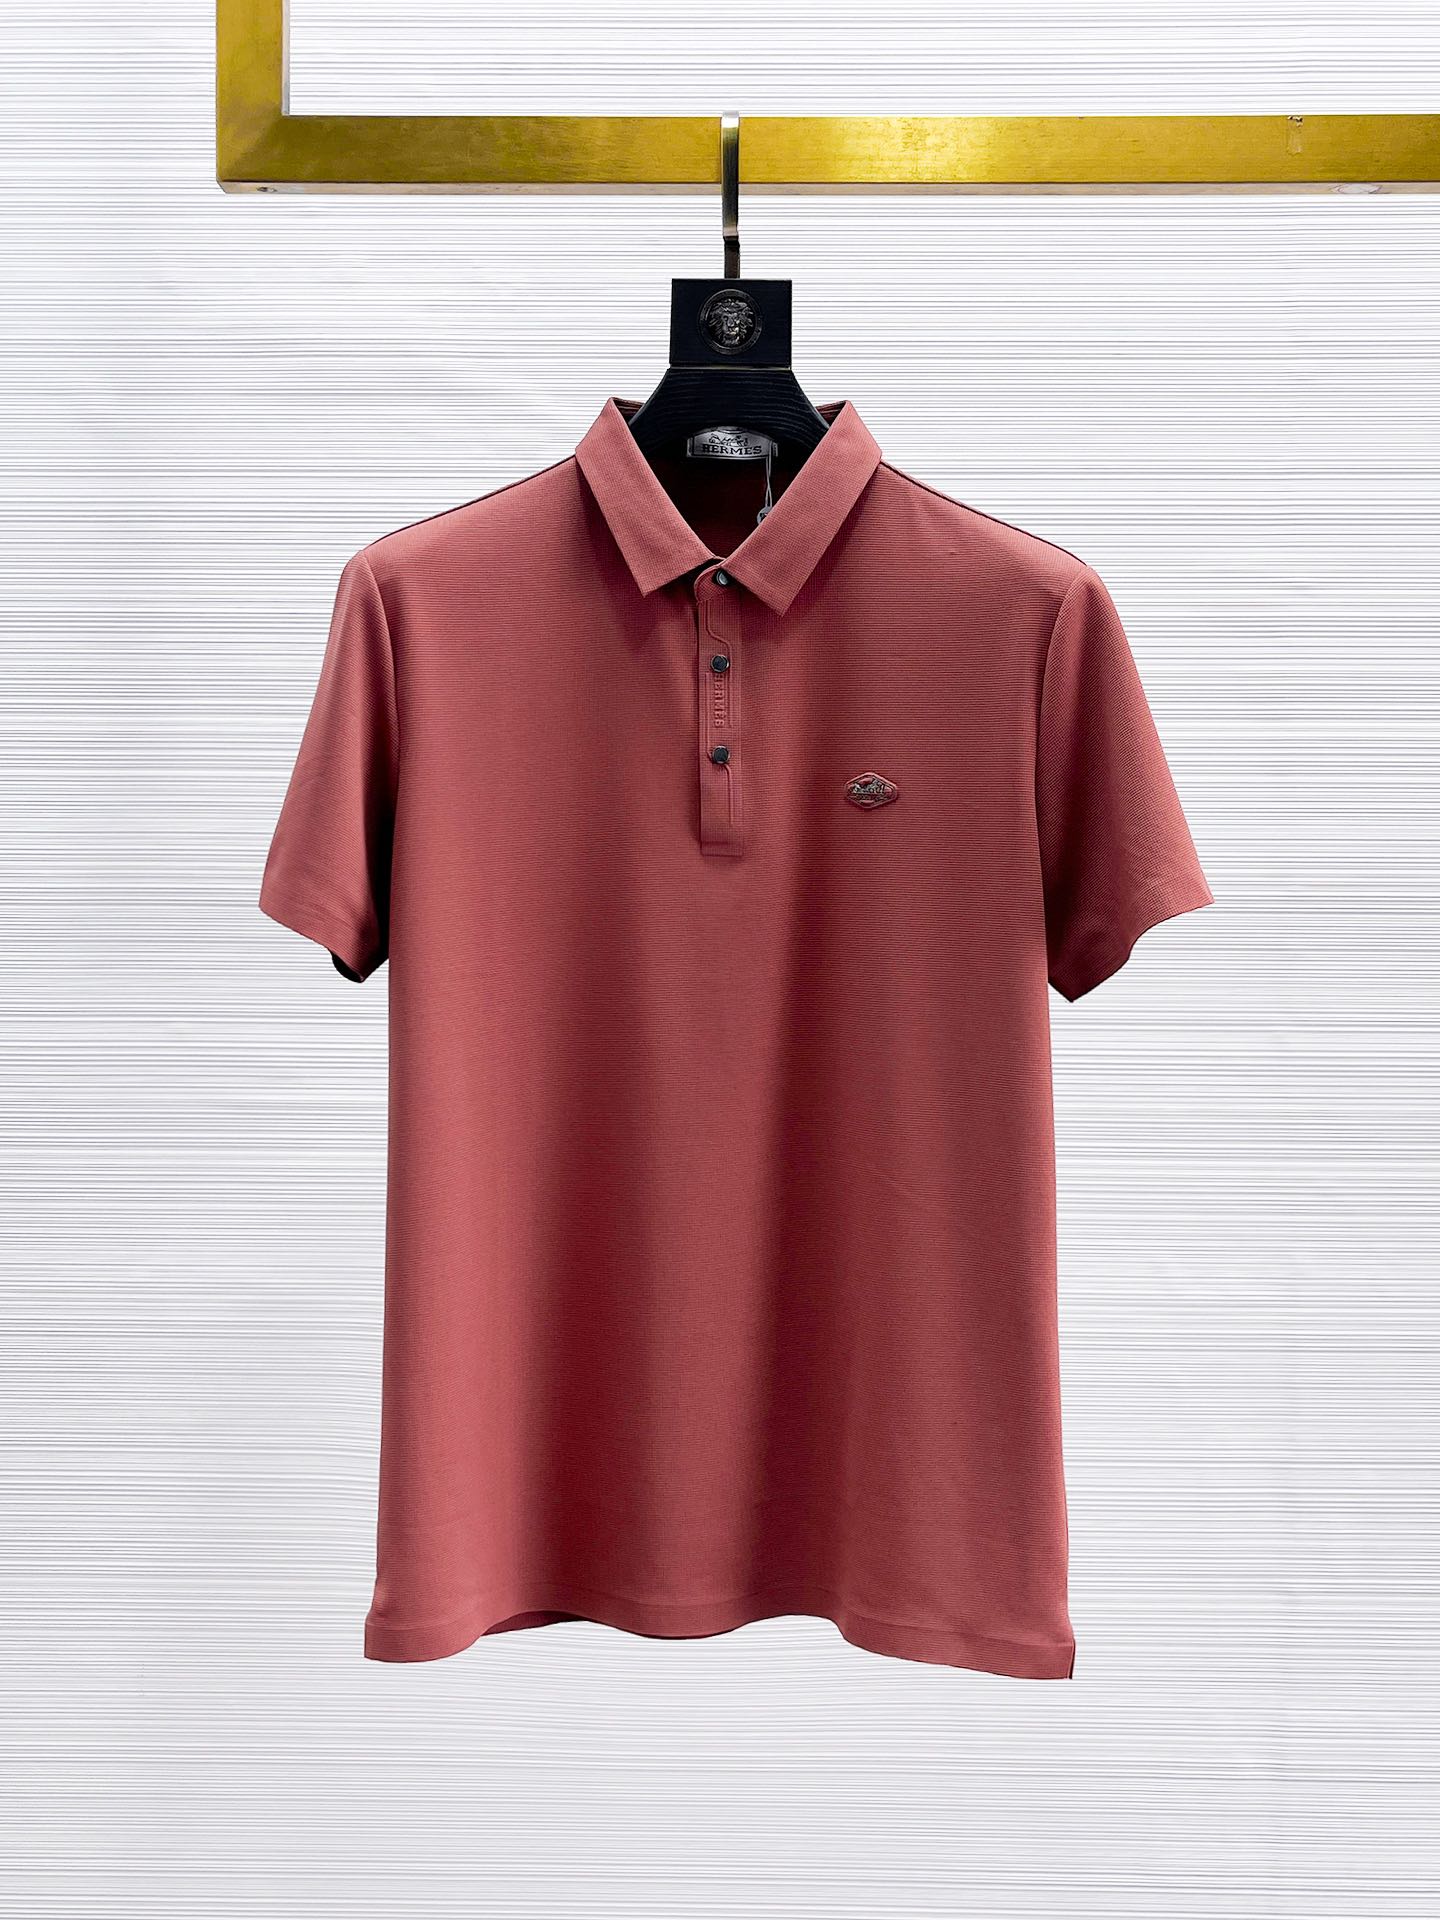 Vendre uniquement de haute qualité
 Hermes Vêtements Polo T-Shirt Blanc Série d’été Manches courtes